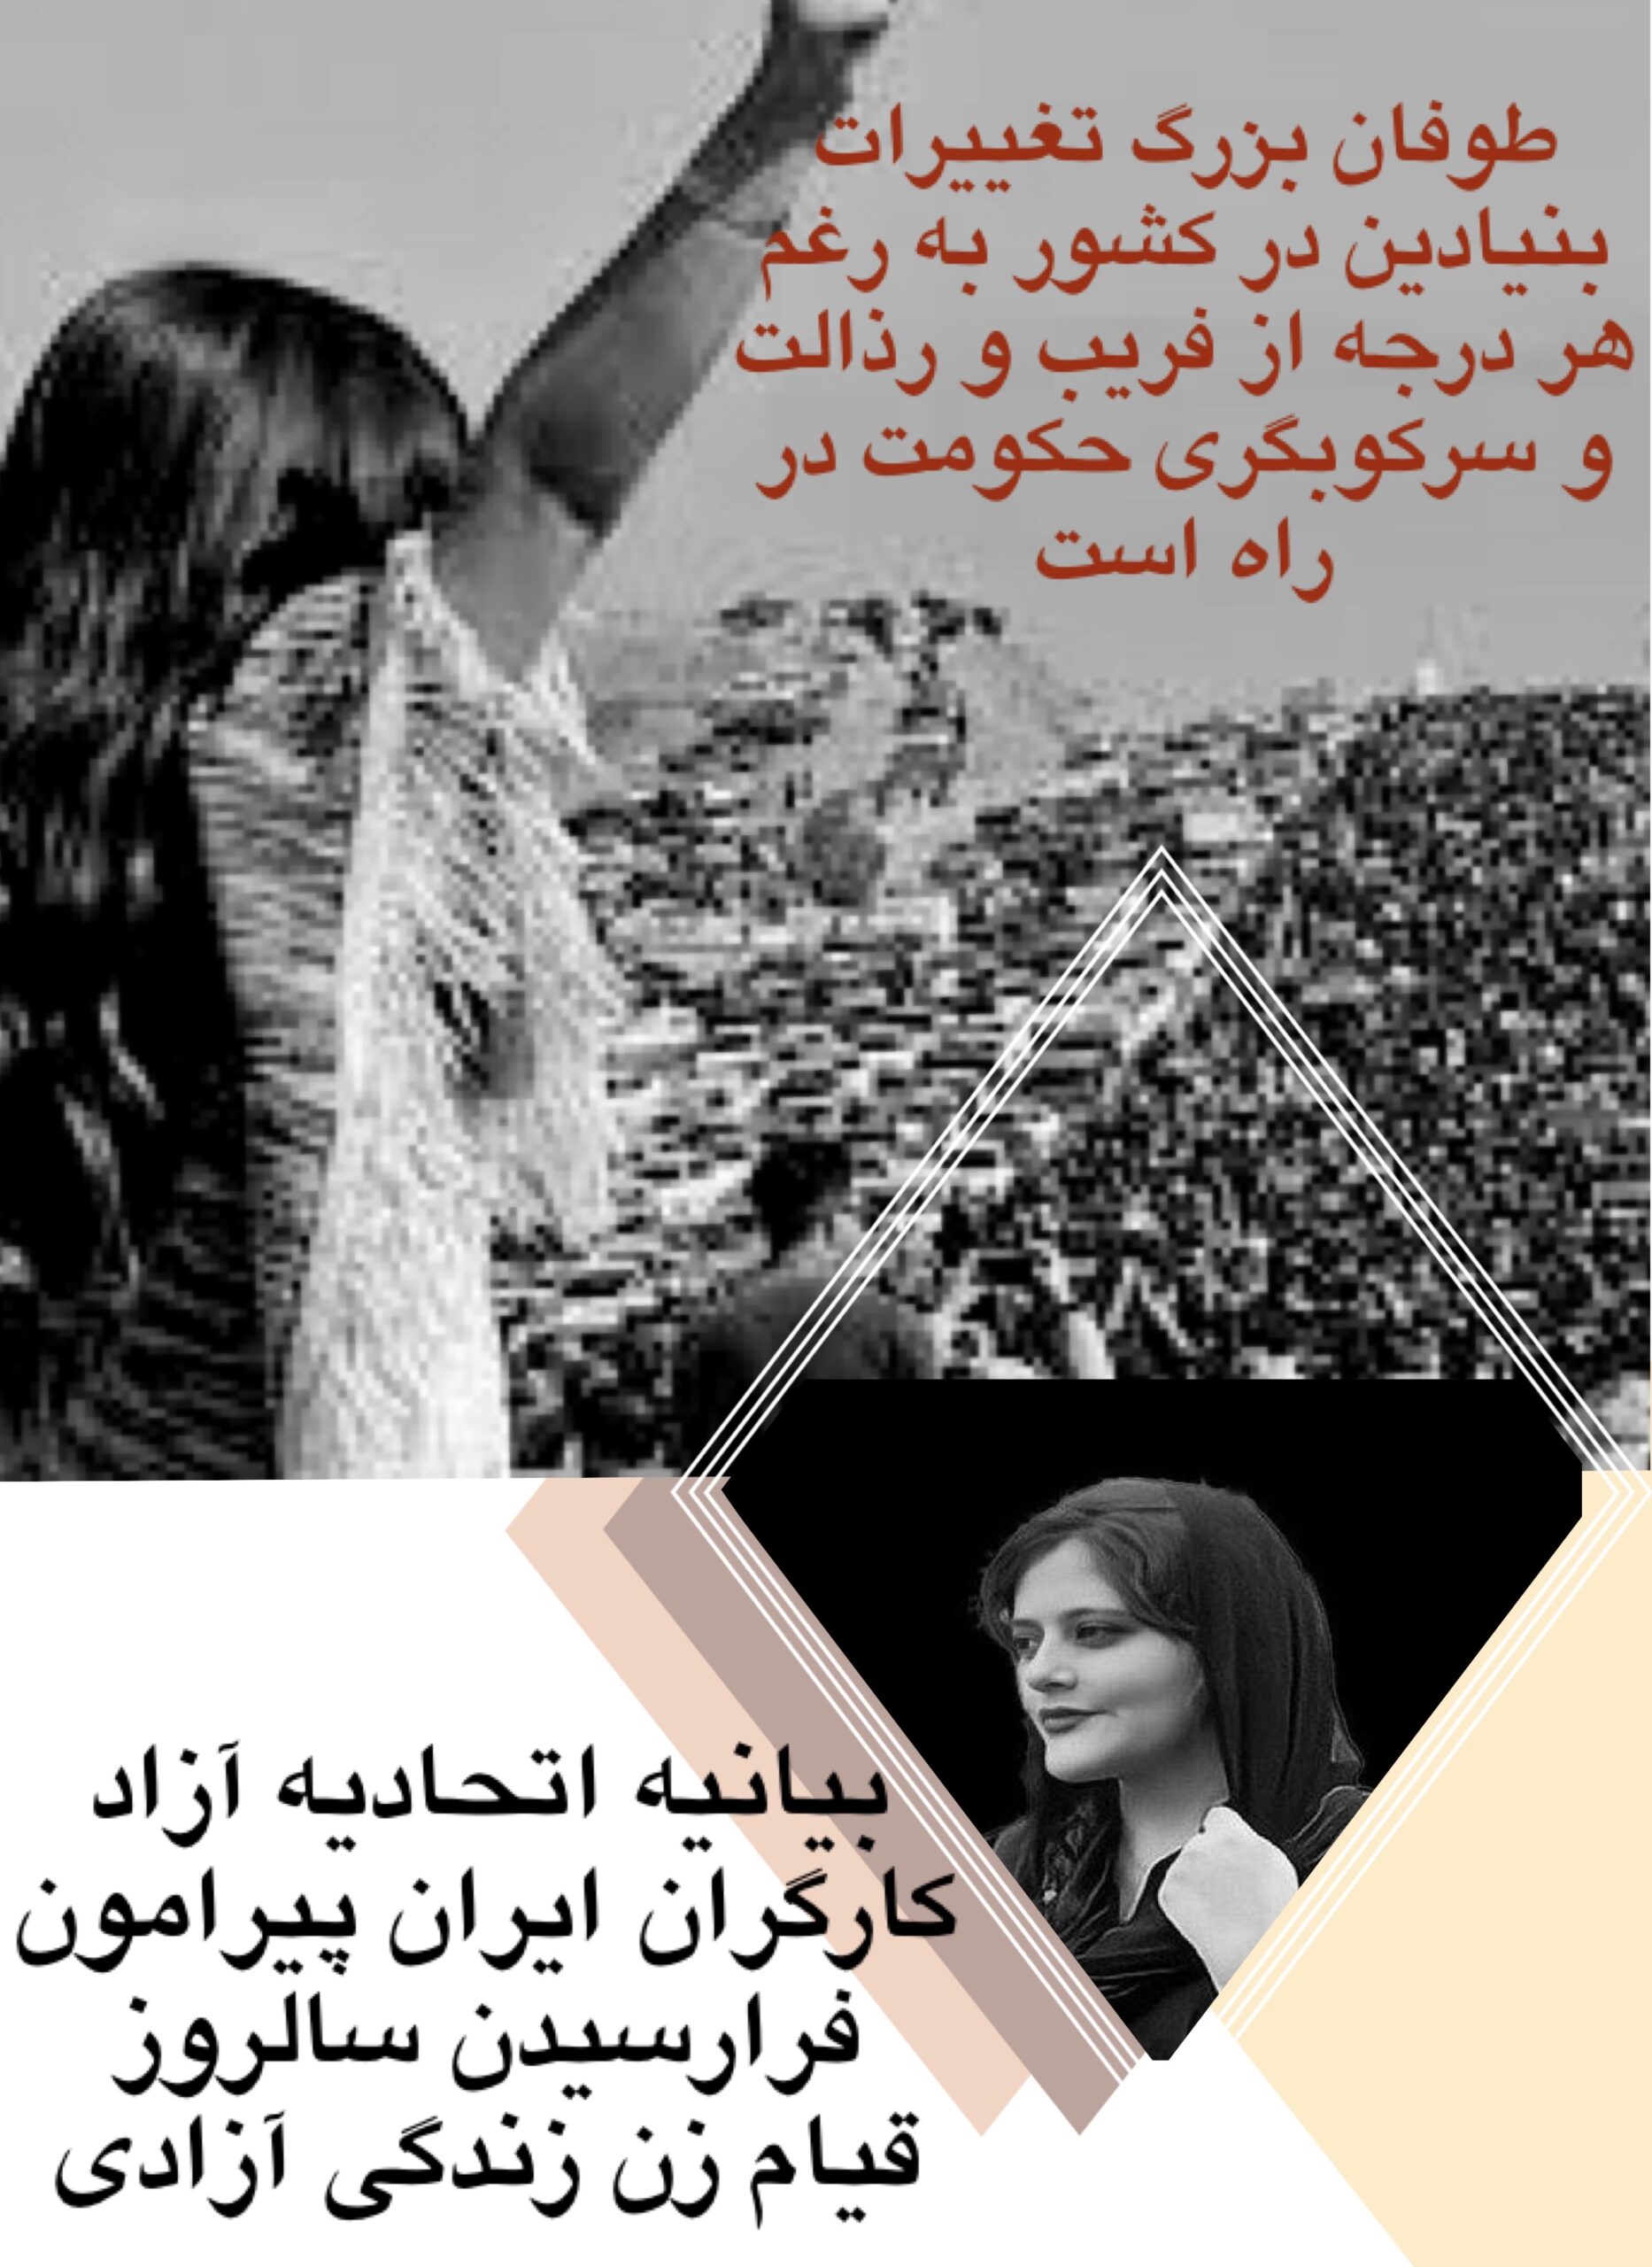 بیانیه اتحادیه آزاد کارگران ایران پیرامون فرارسیدن سالروز قیام " زن زندگی آزادی"